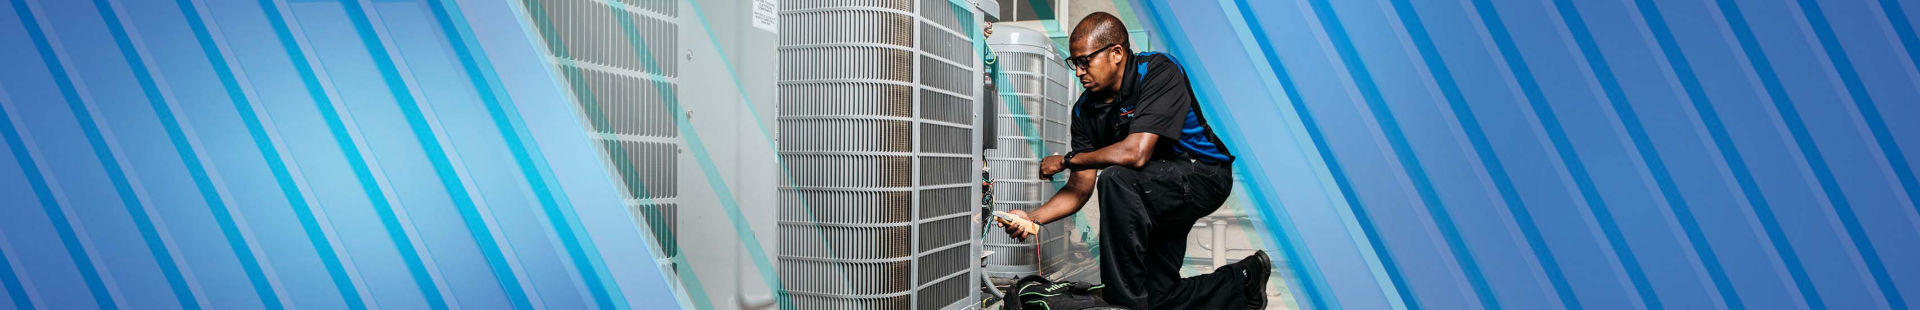 HVAC tech repairing an air conditioning unit